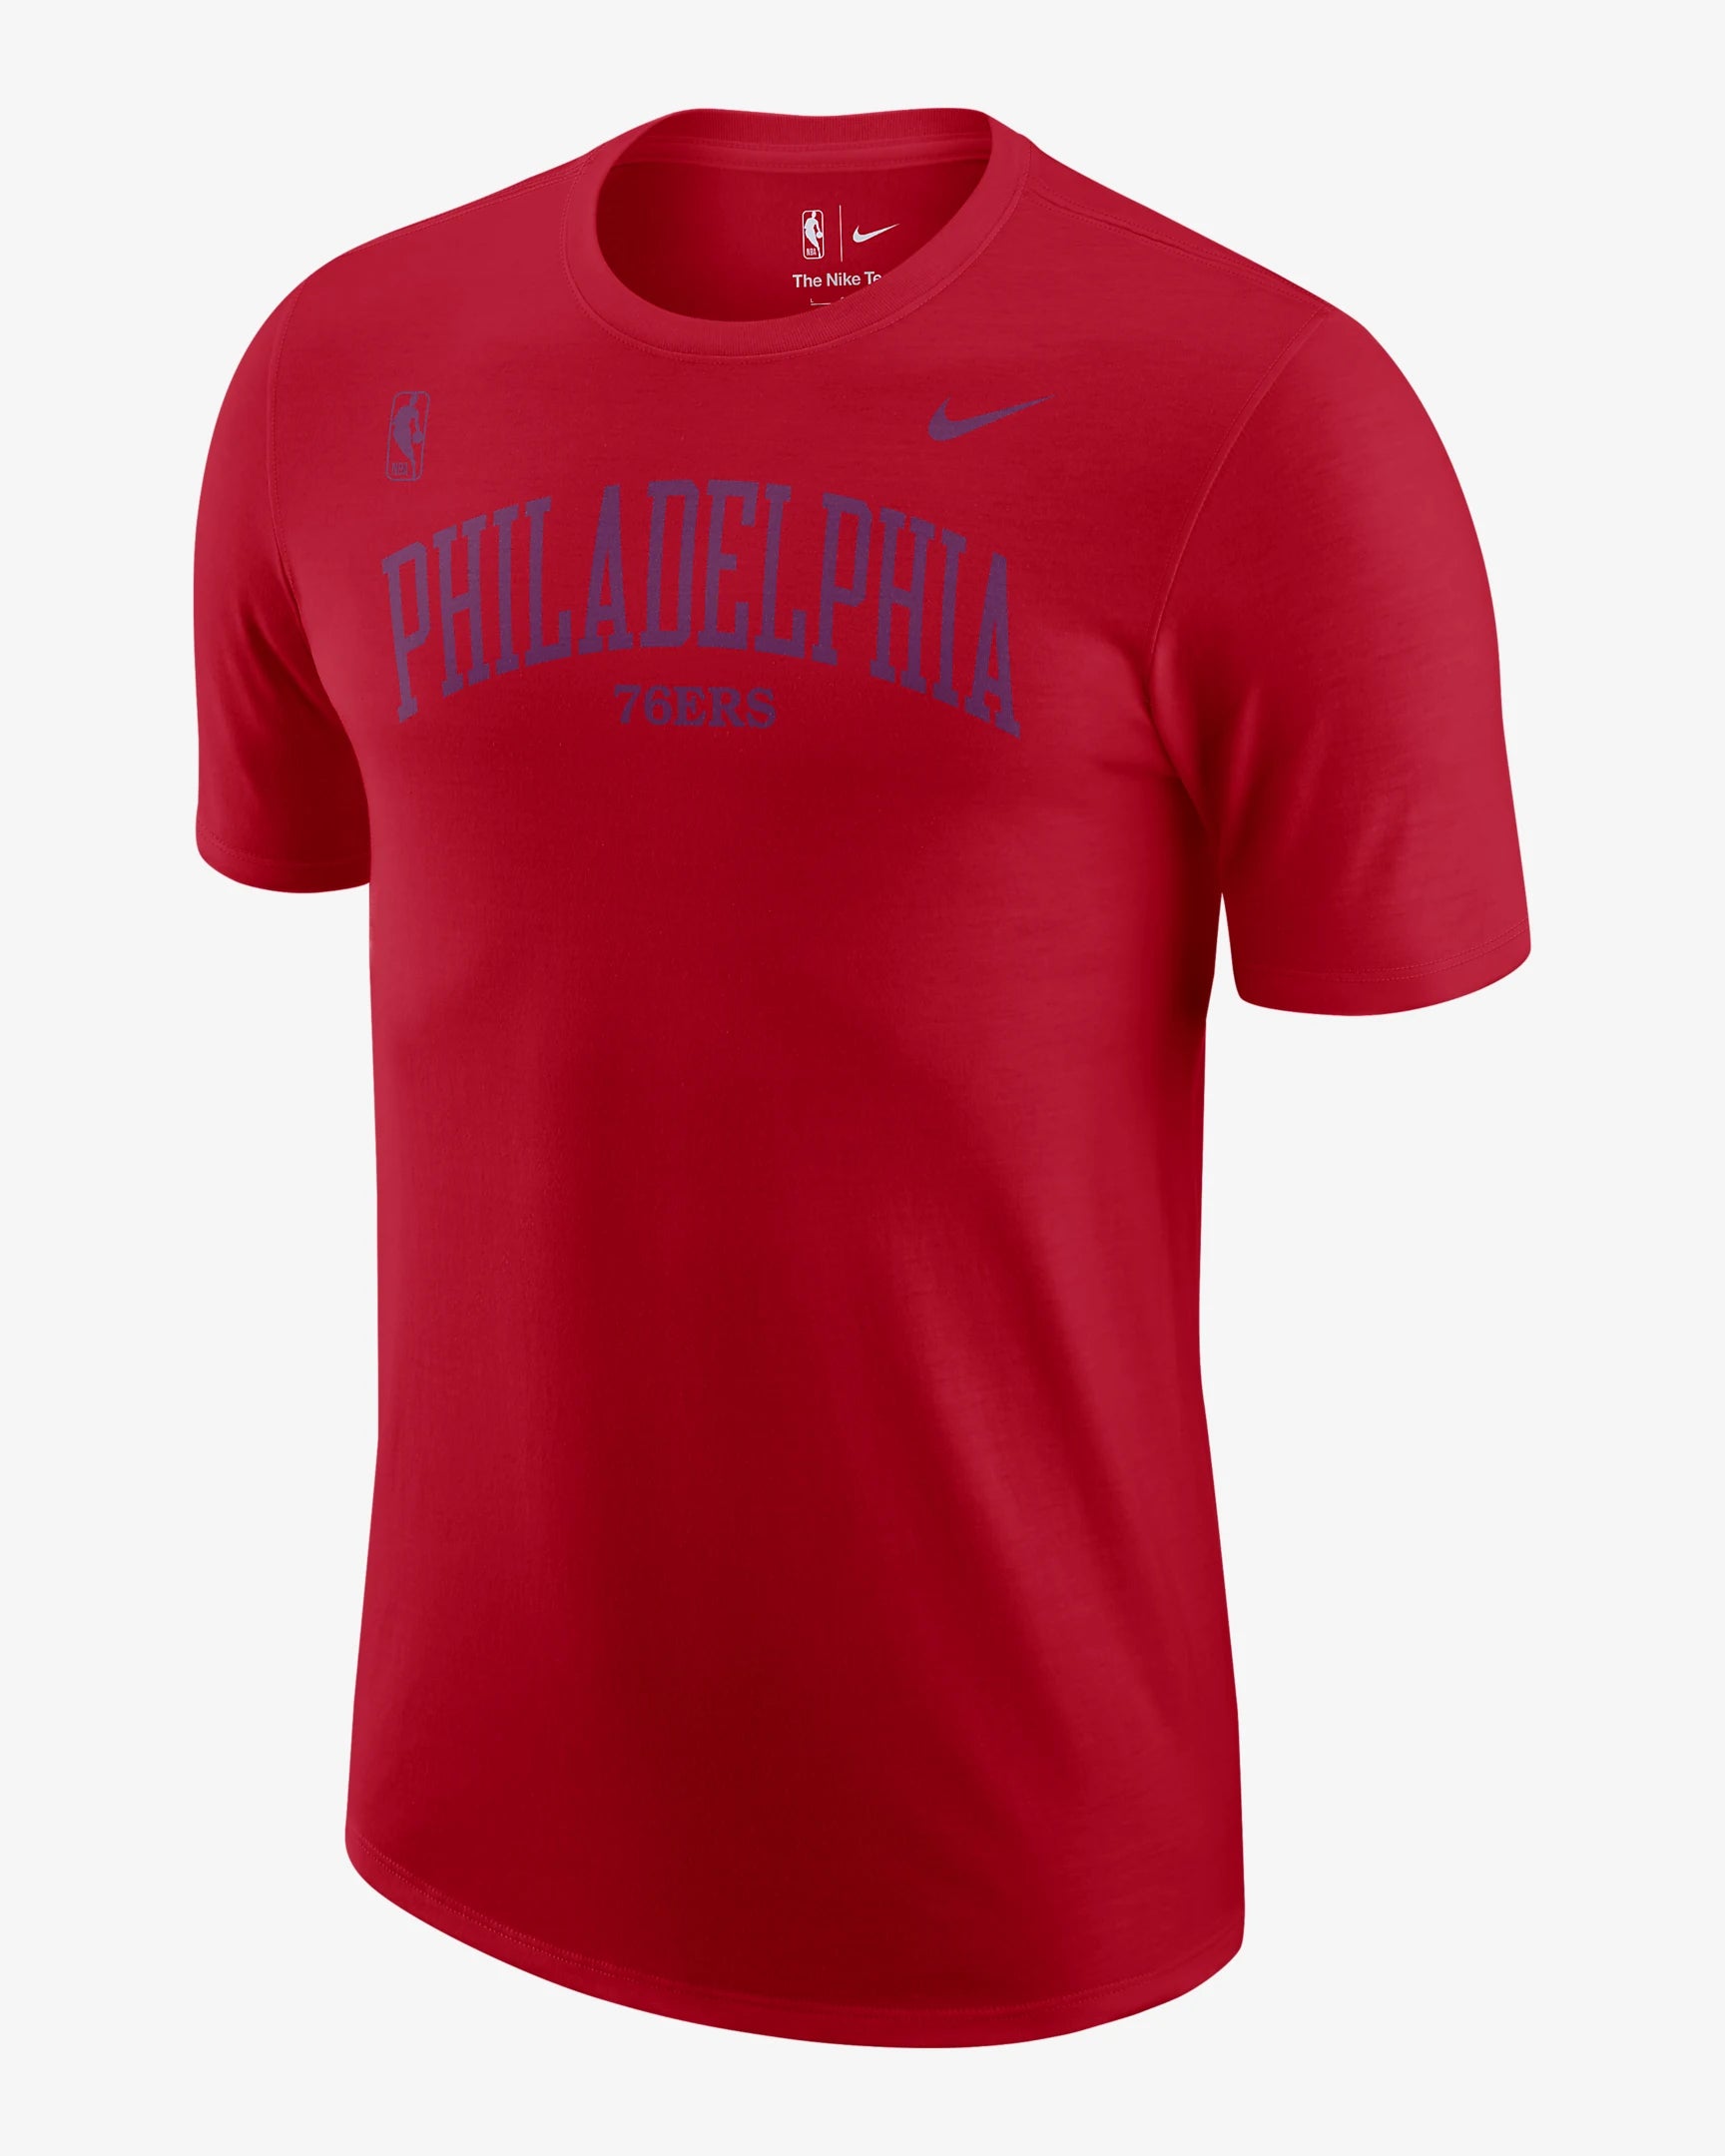 Nike Men's Philadelphia 76ers Black Dri-Fit Practice Long Sleeve T-Shirt, Large